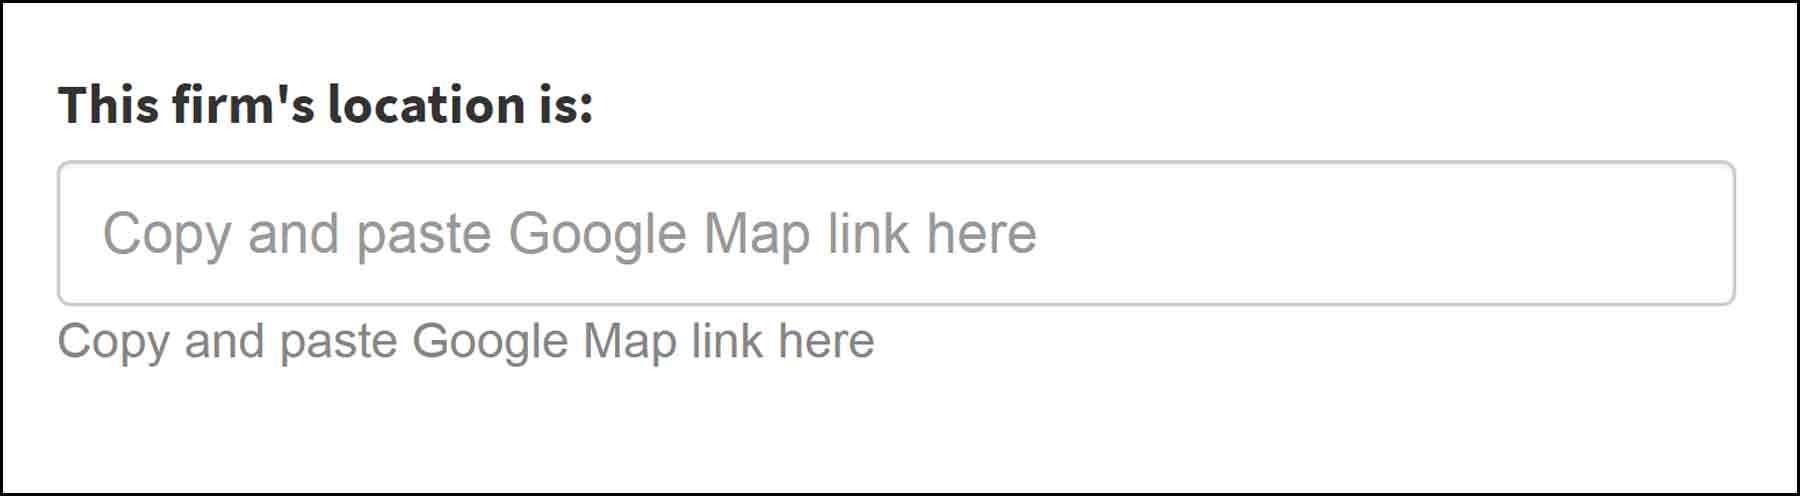 FD - Google maps textbox-min